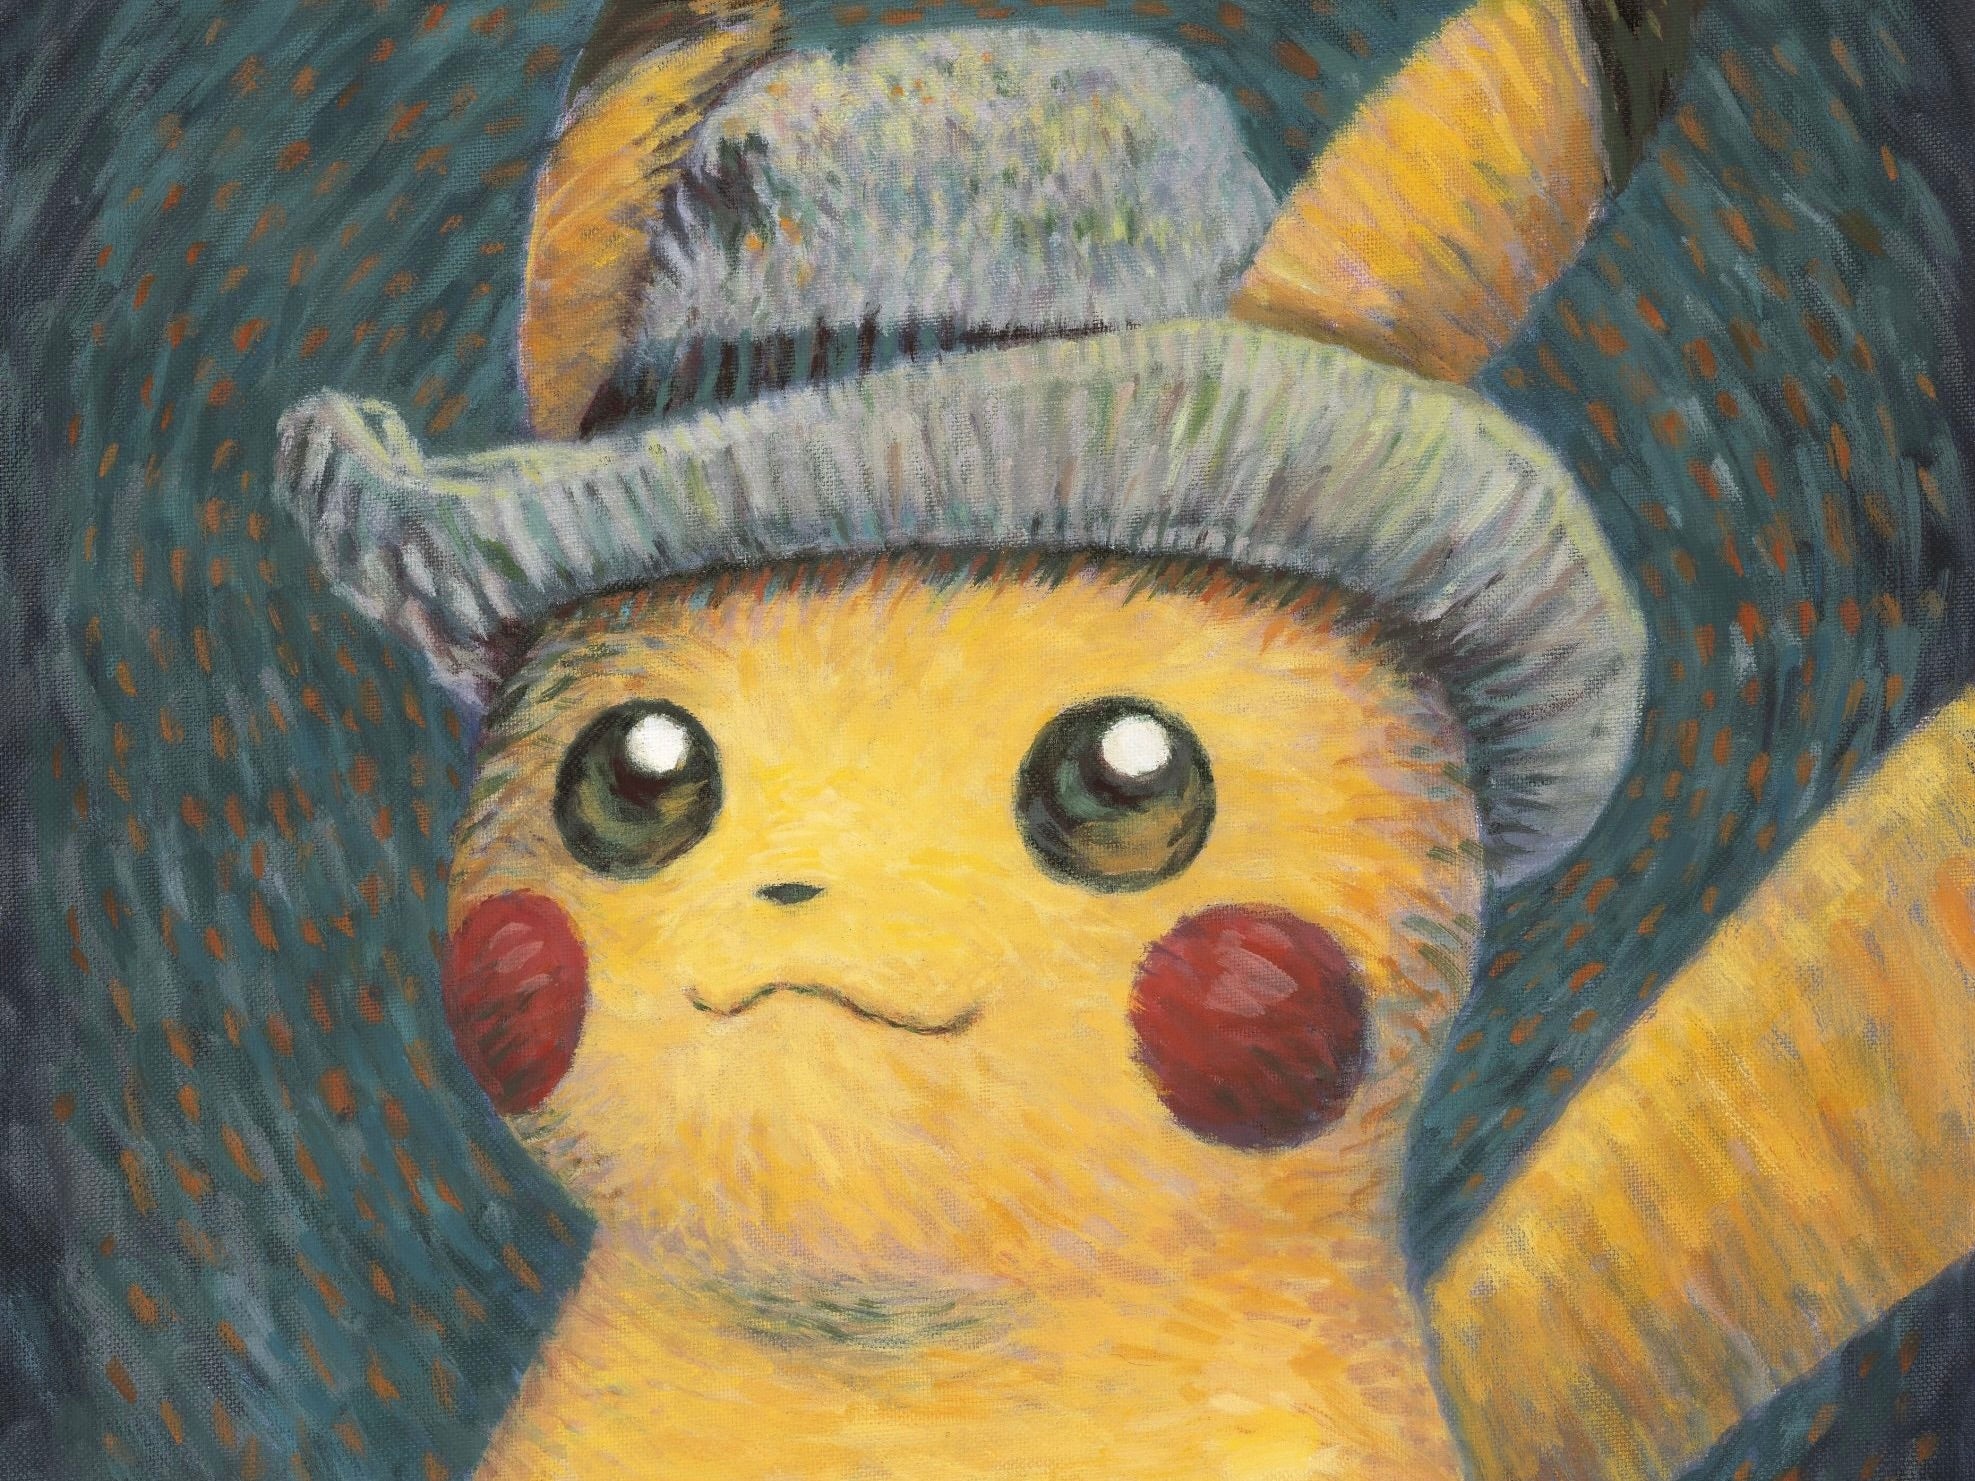 Pikachu at The Van Gogh Museum!